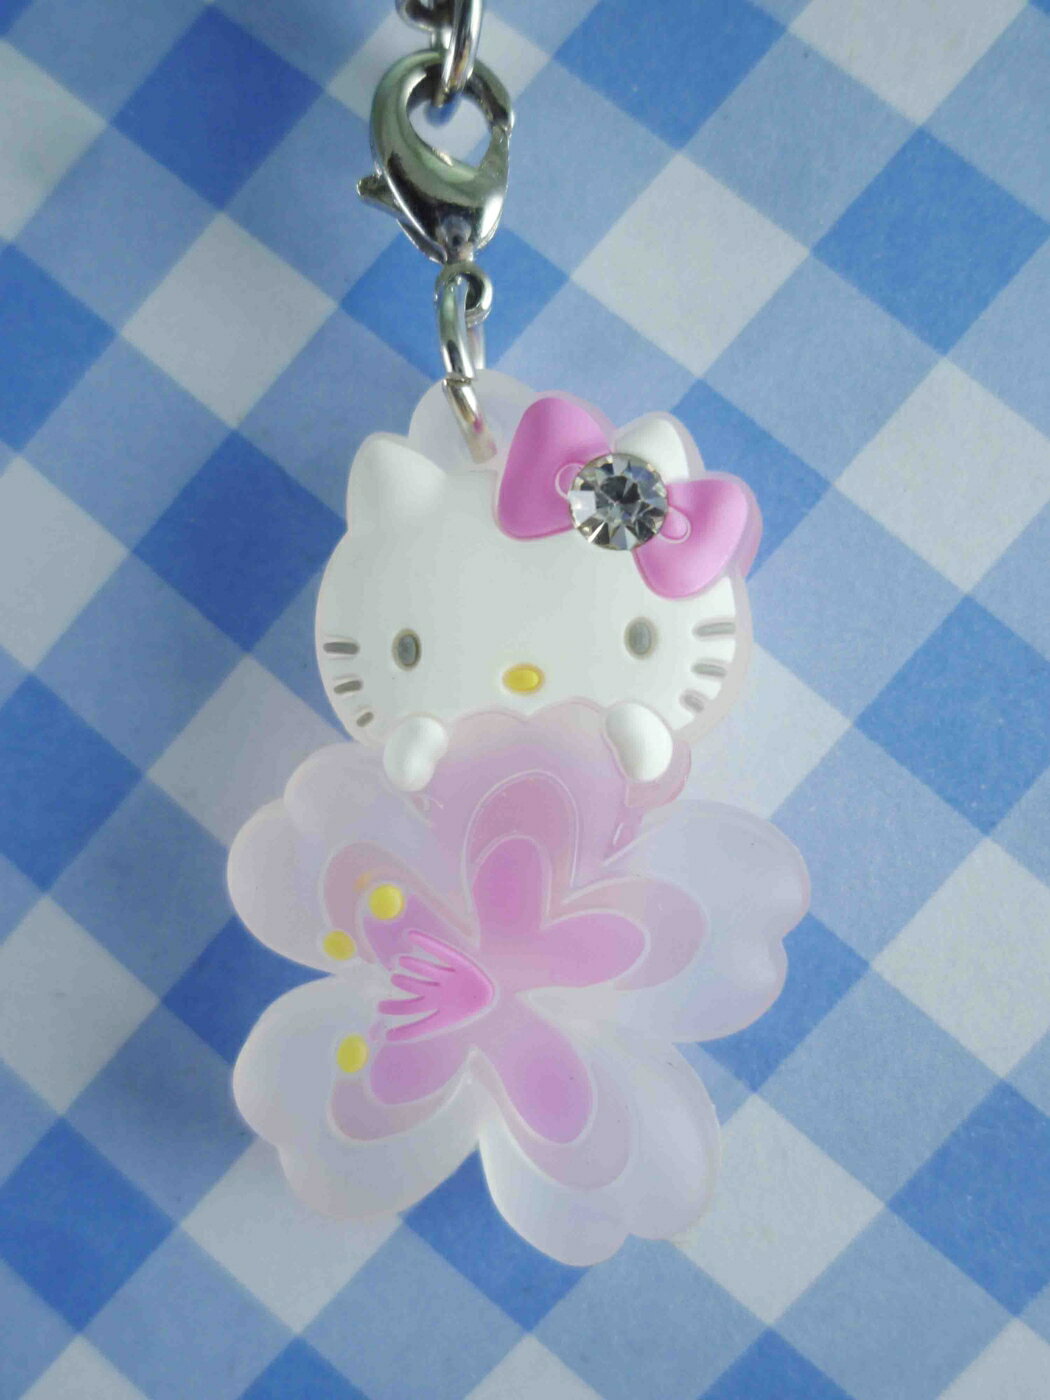 【震撼精品百貨】Hello Kitty 凱蒂貓 KITTY手機吊飾-櫻花圖案 震撼日式精品百貨